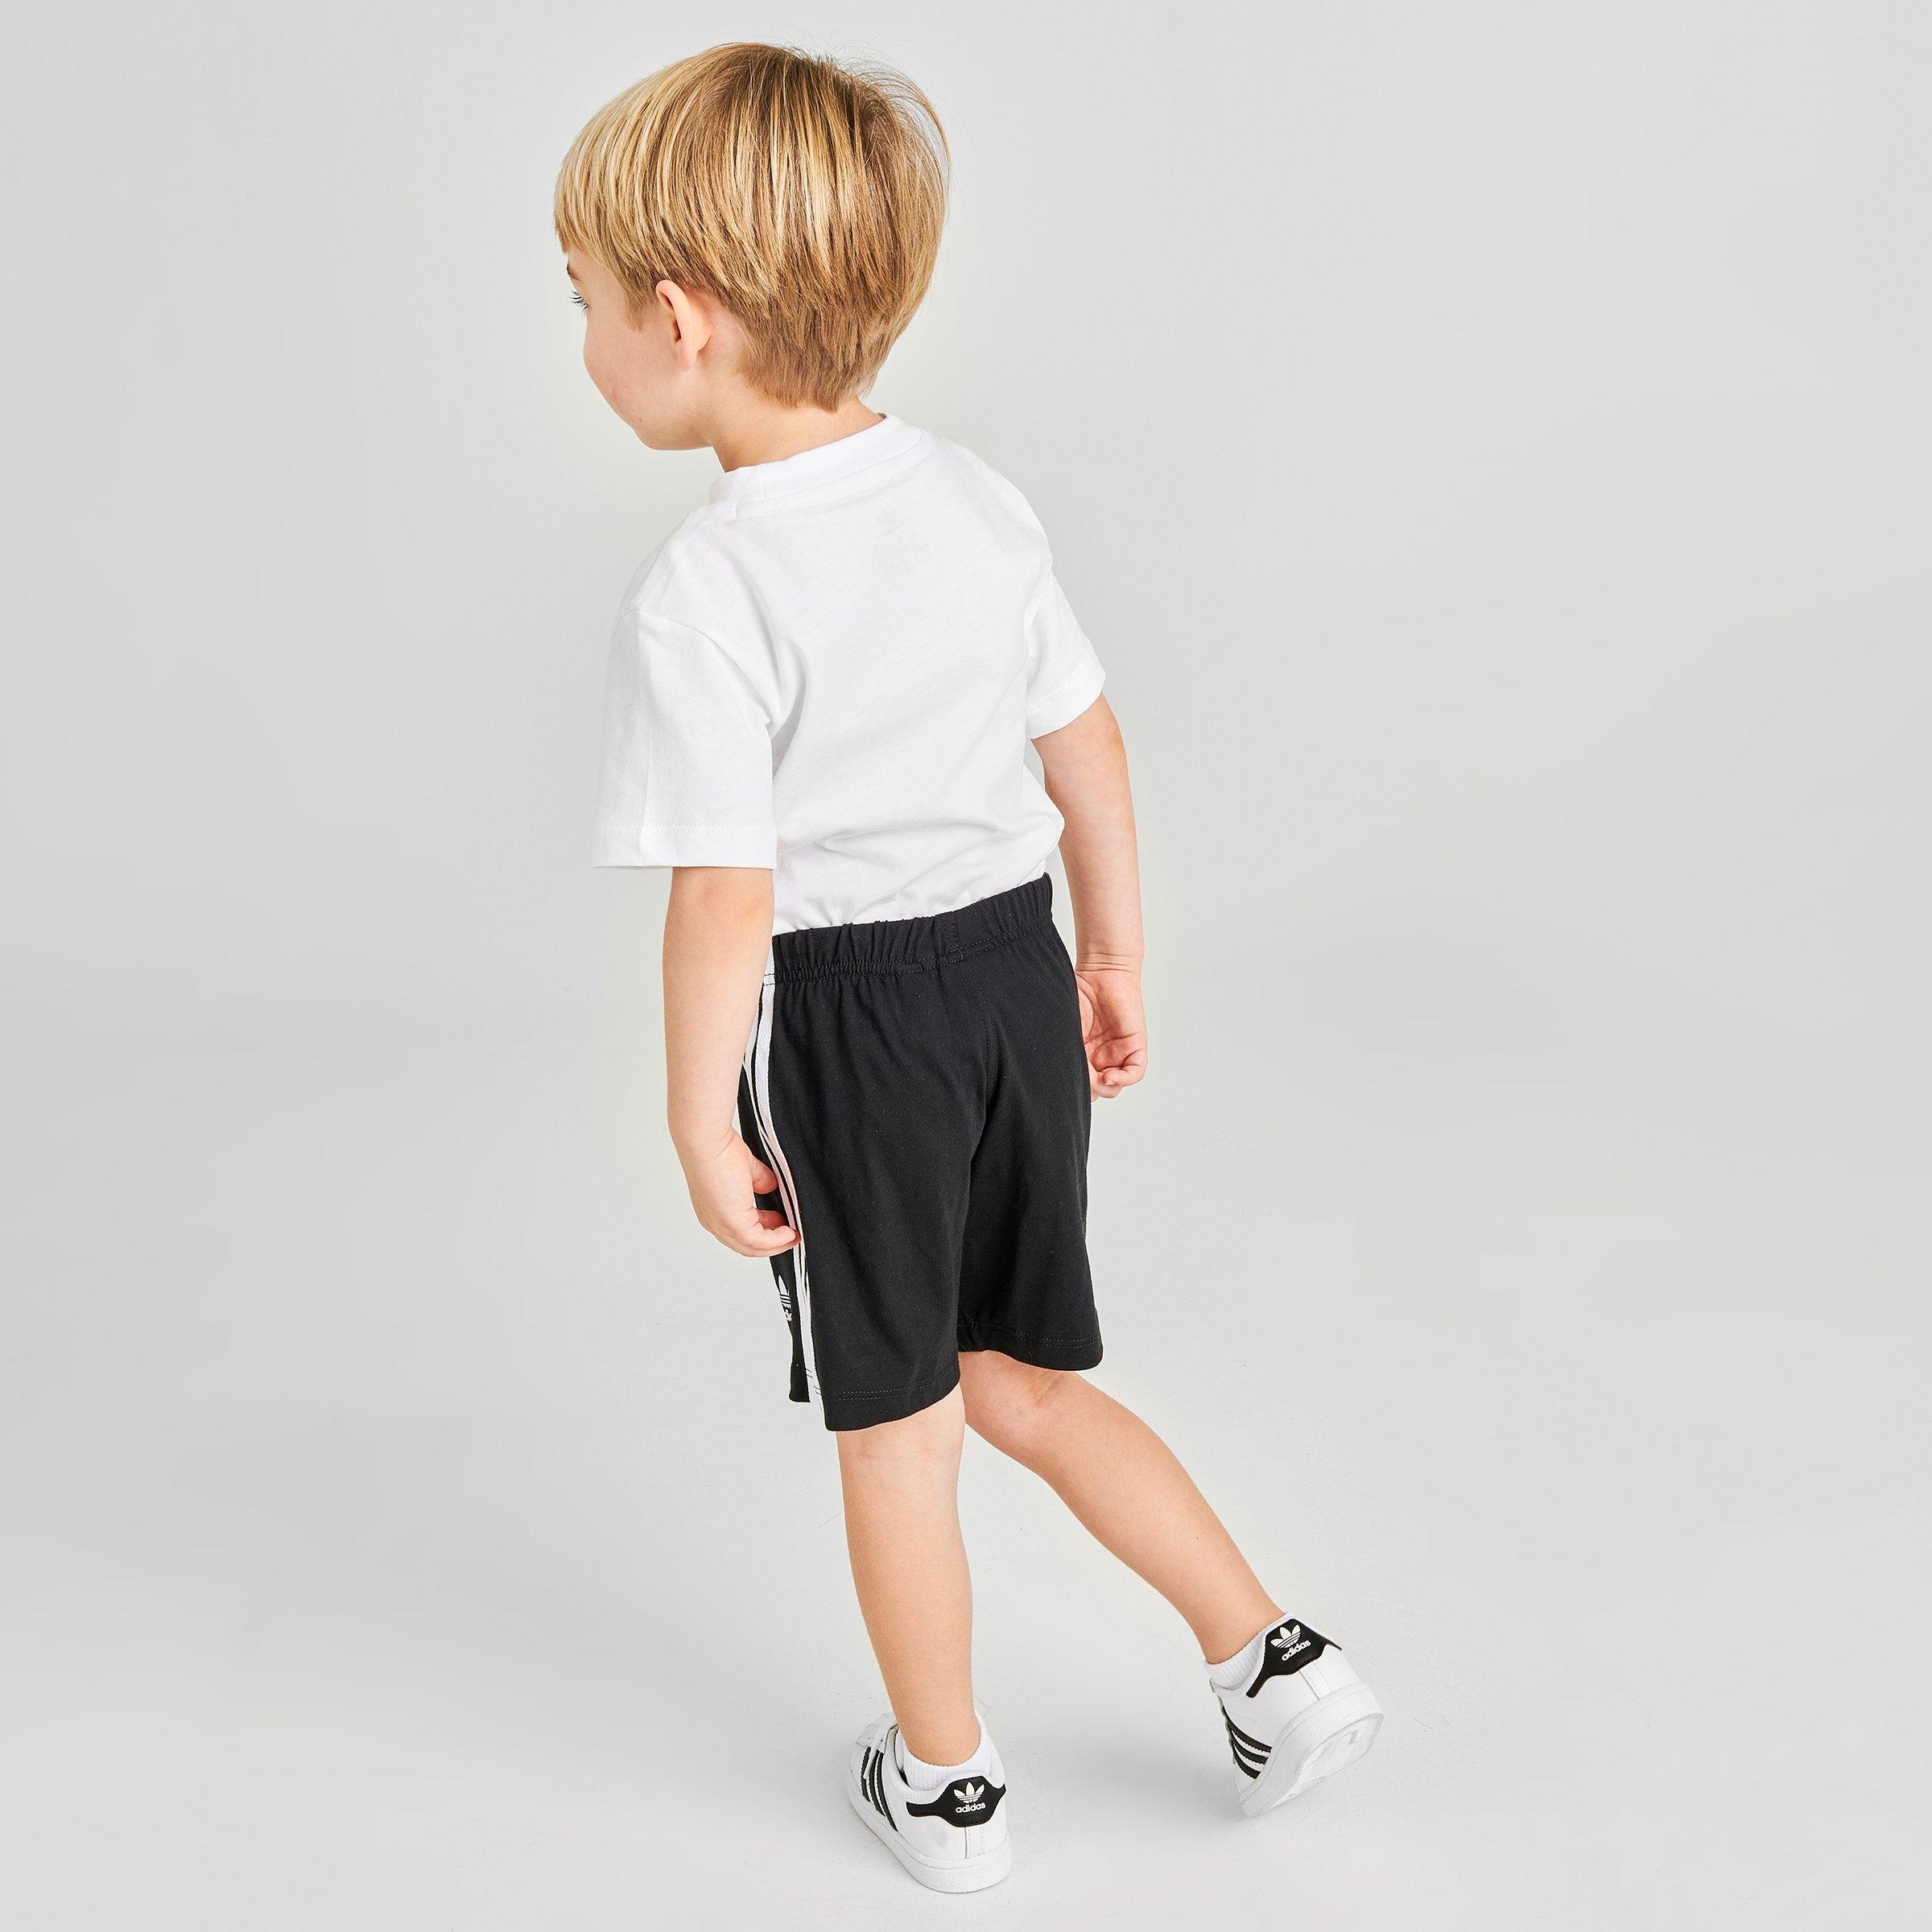 adidas shorts and t shirt junior